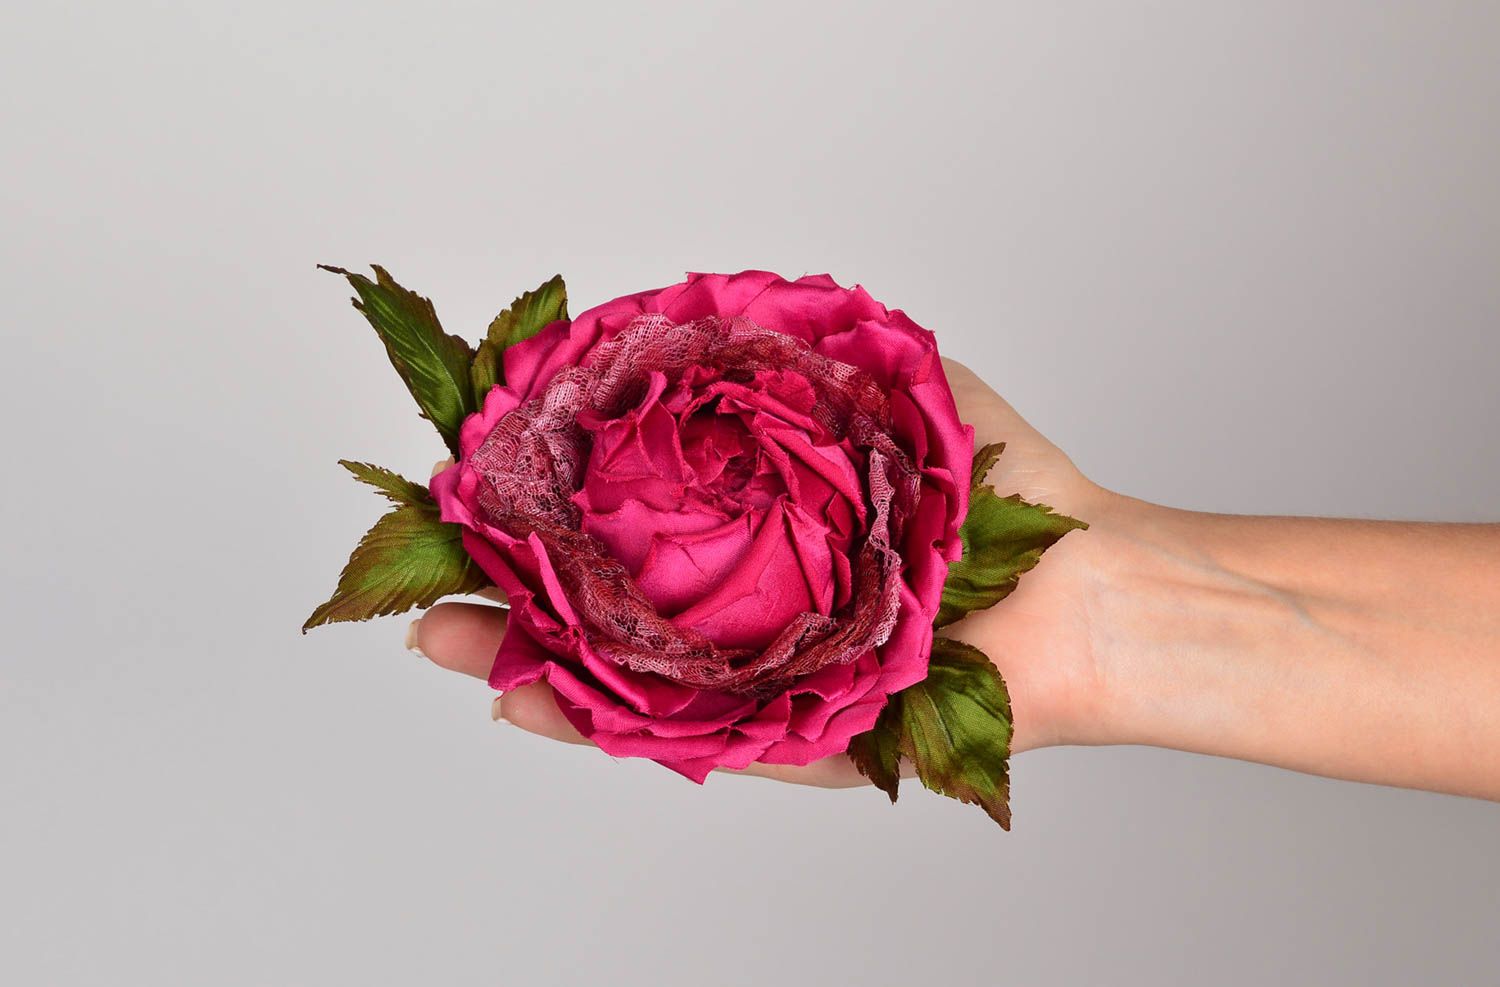 Брошь из шелка хэнд мэйд брошь-заколка пурпурная роза авторская бижутерия фото 5